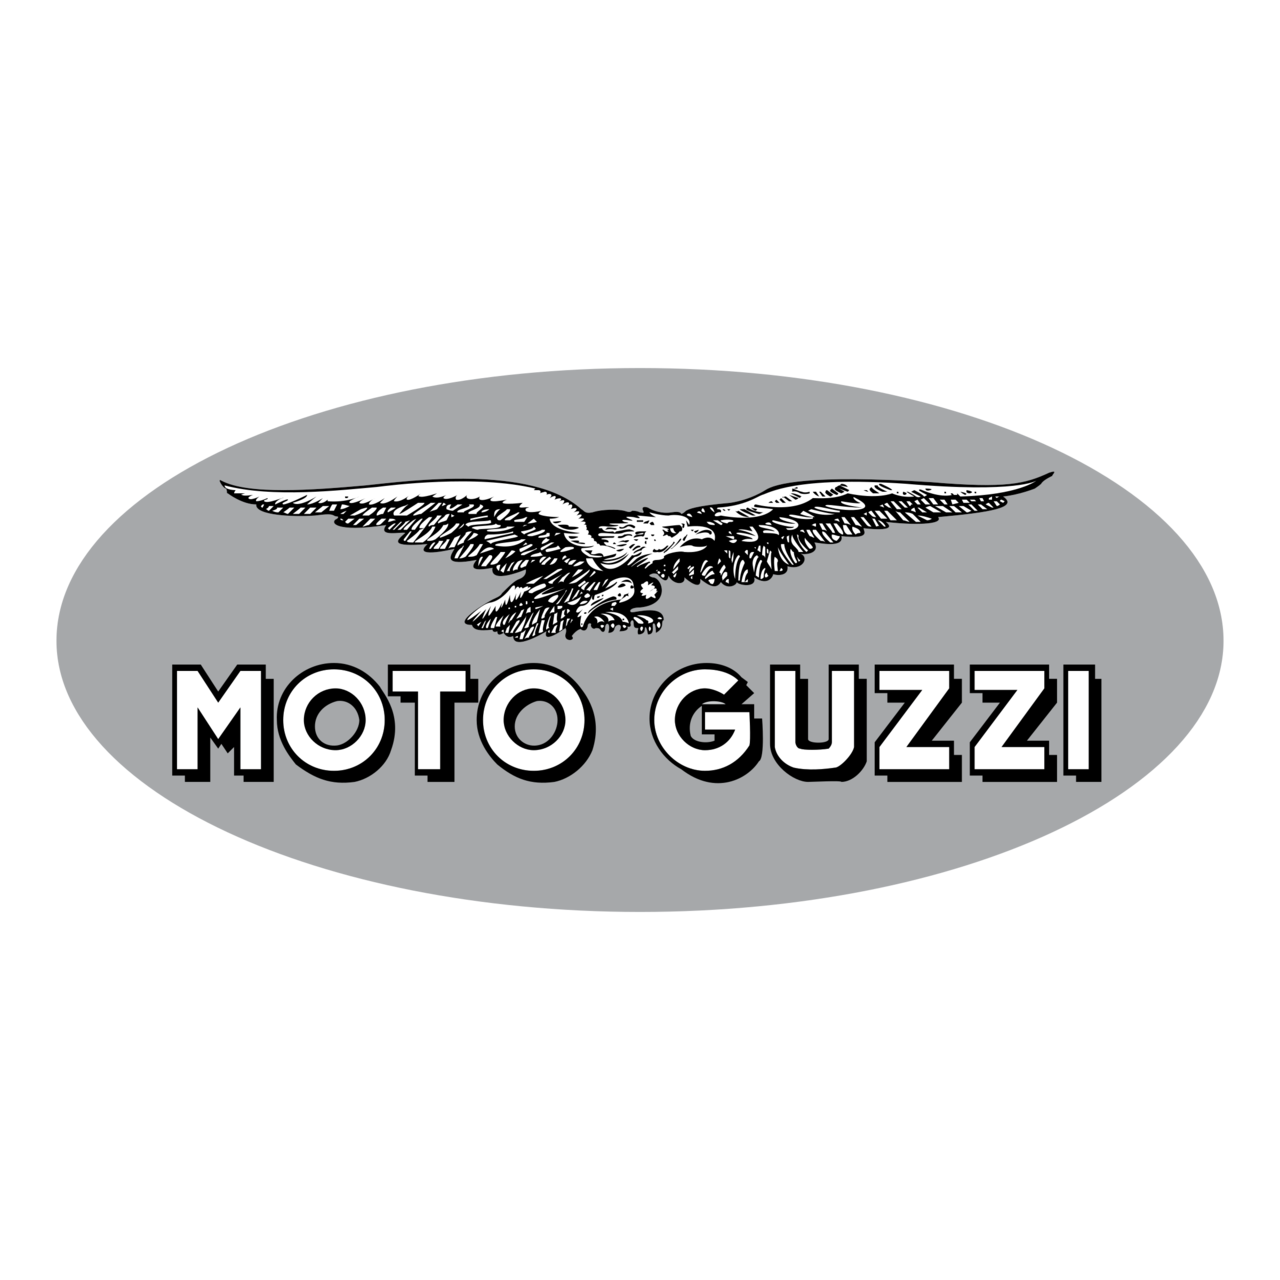 Moto Guzzi Transparent File